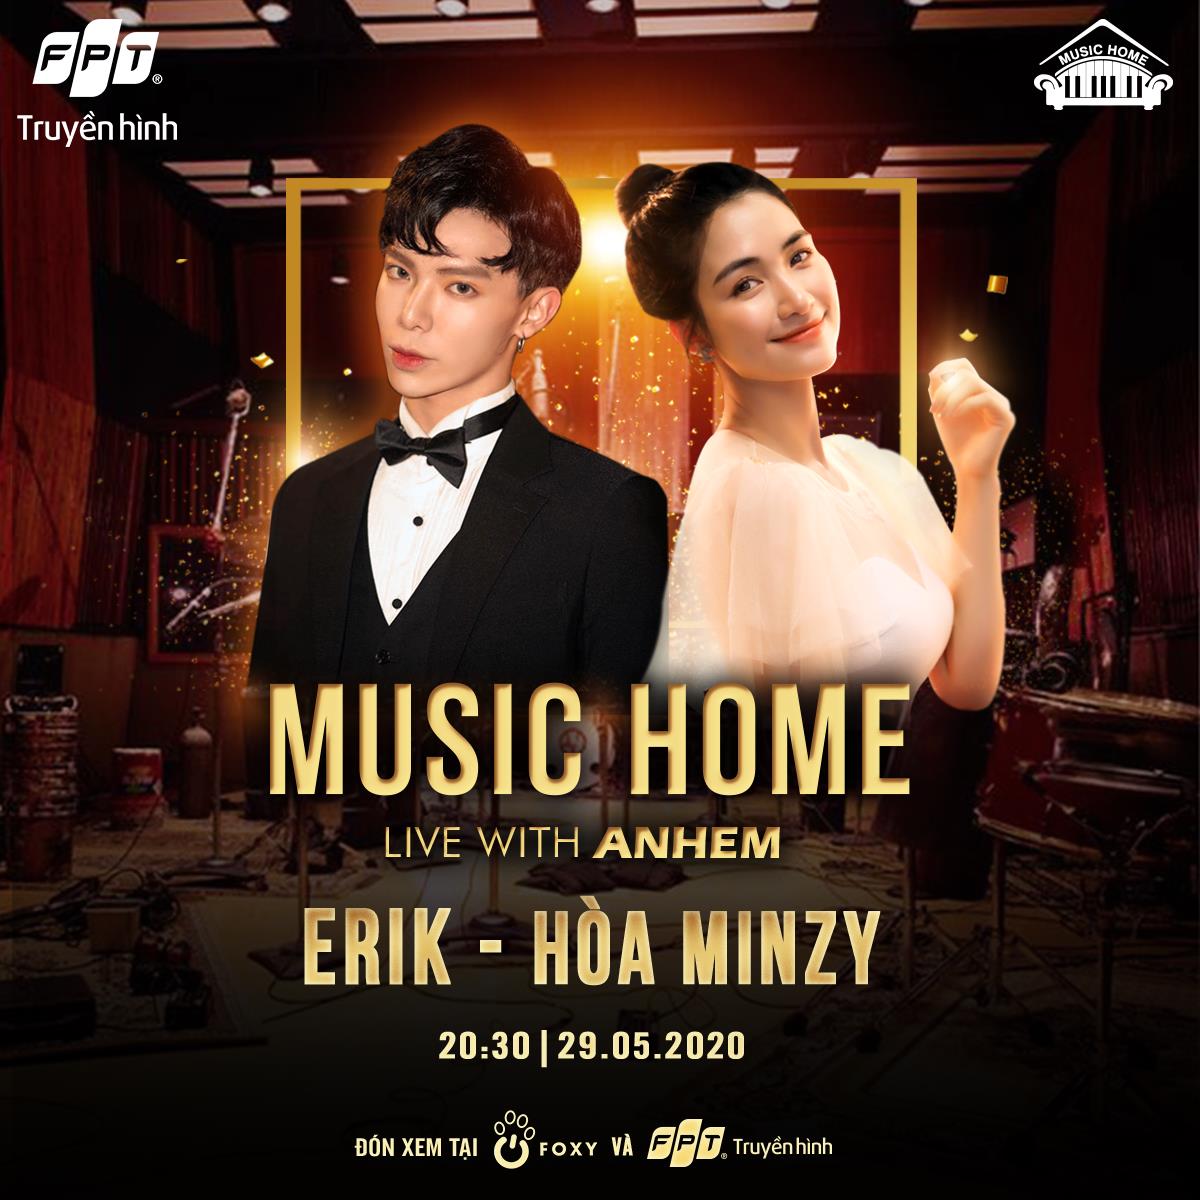 Hòa Minzy - Erik mang đến không gian âm nhạc "chuẩn nhà hát" tại Music Home - Ảnh 1.